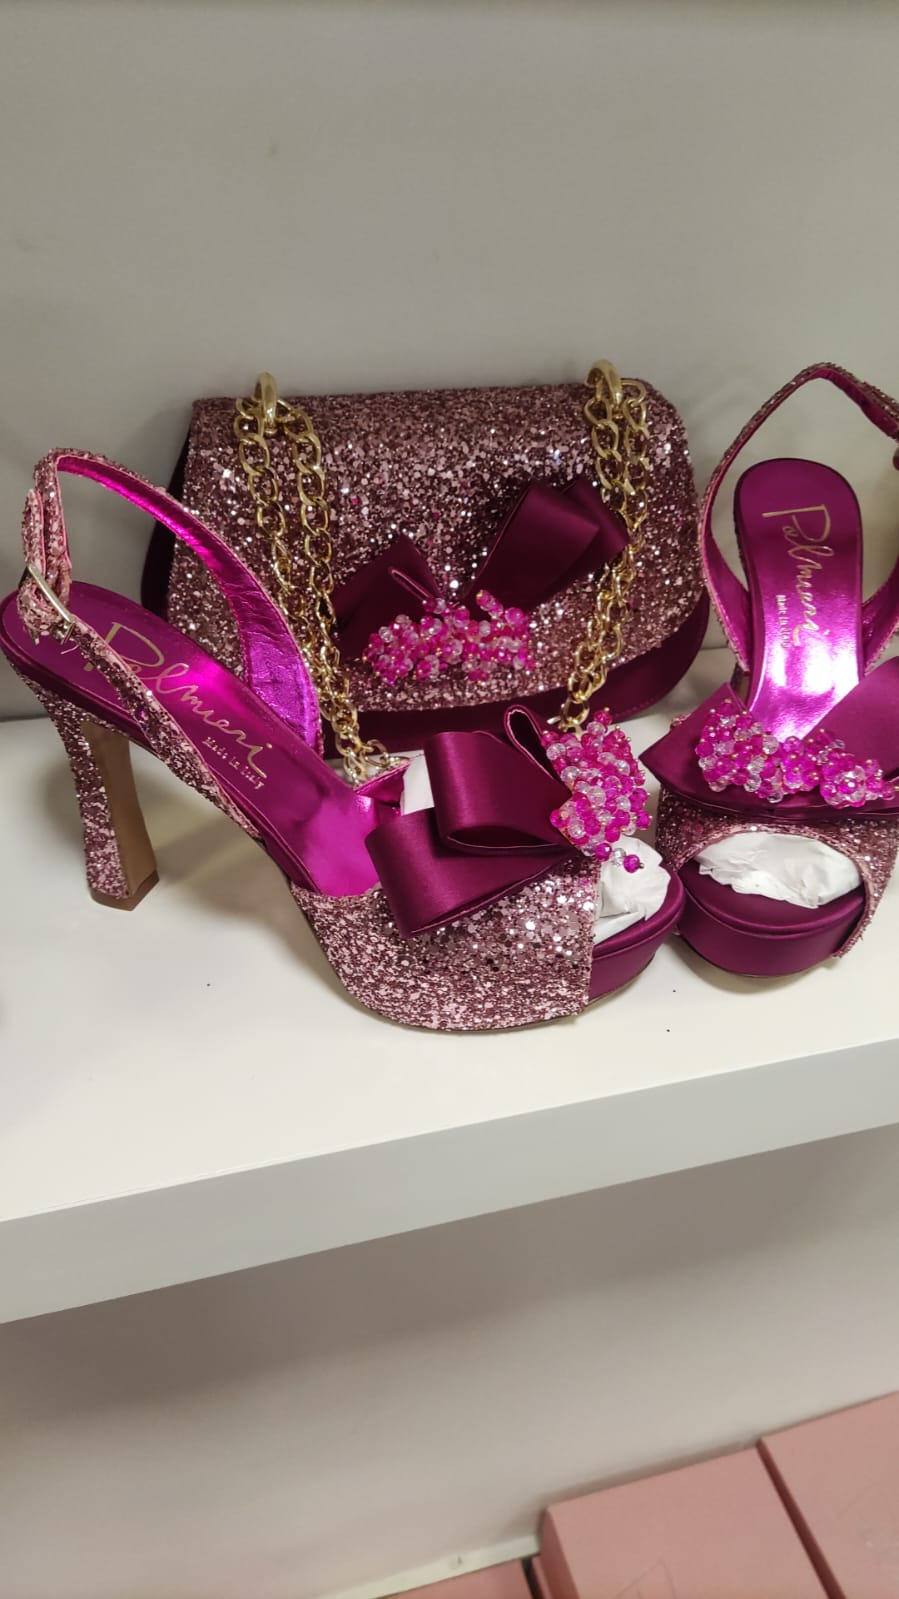 Luxury Italian Bruno shoe and bag - Godshandfashion - Pink EUR 39/US 9, bruno shoes